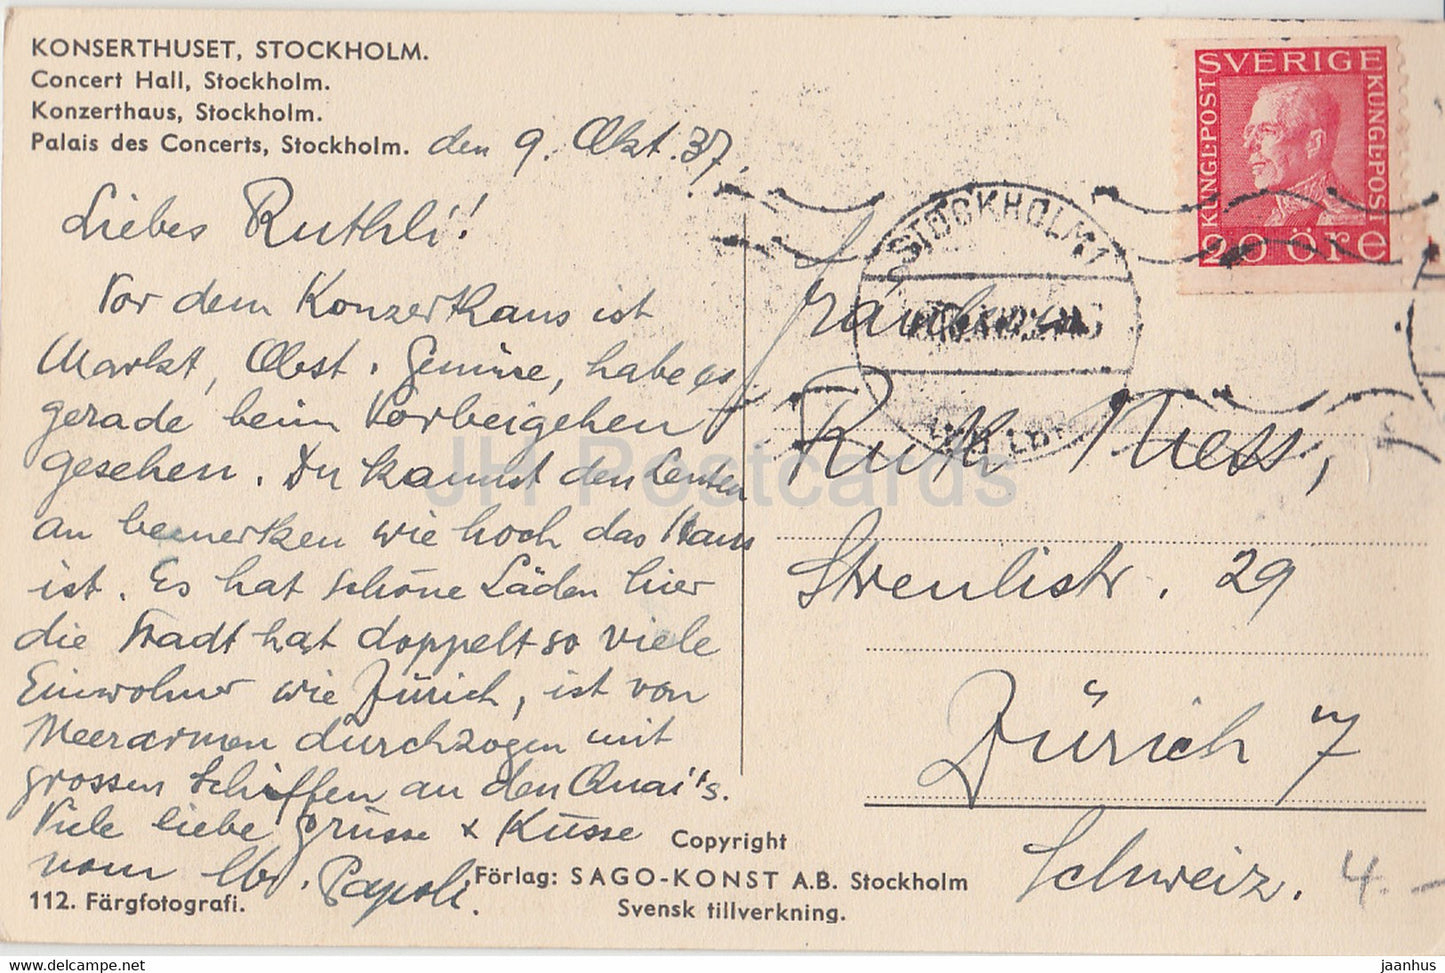 Stockholm - Konserthuset - Salle de concert - carte postale ancienne - 1937 - Suède - utilisé